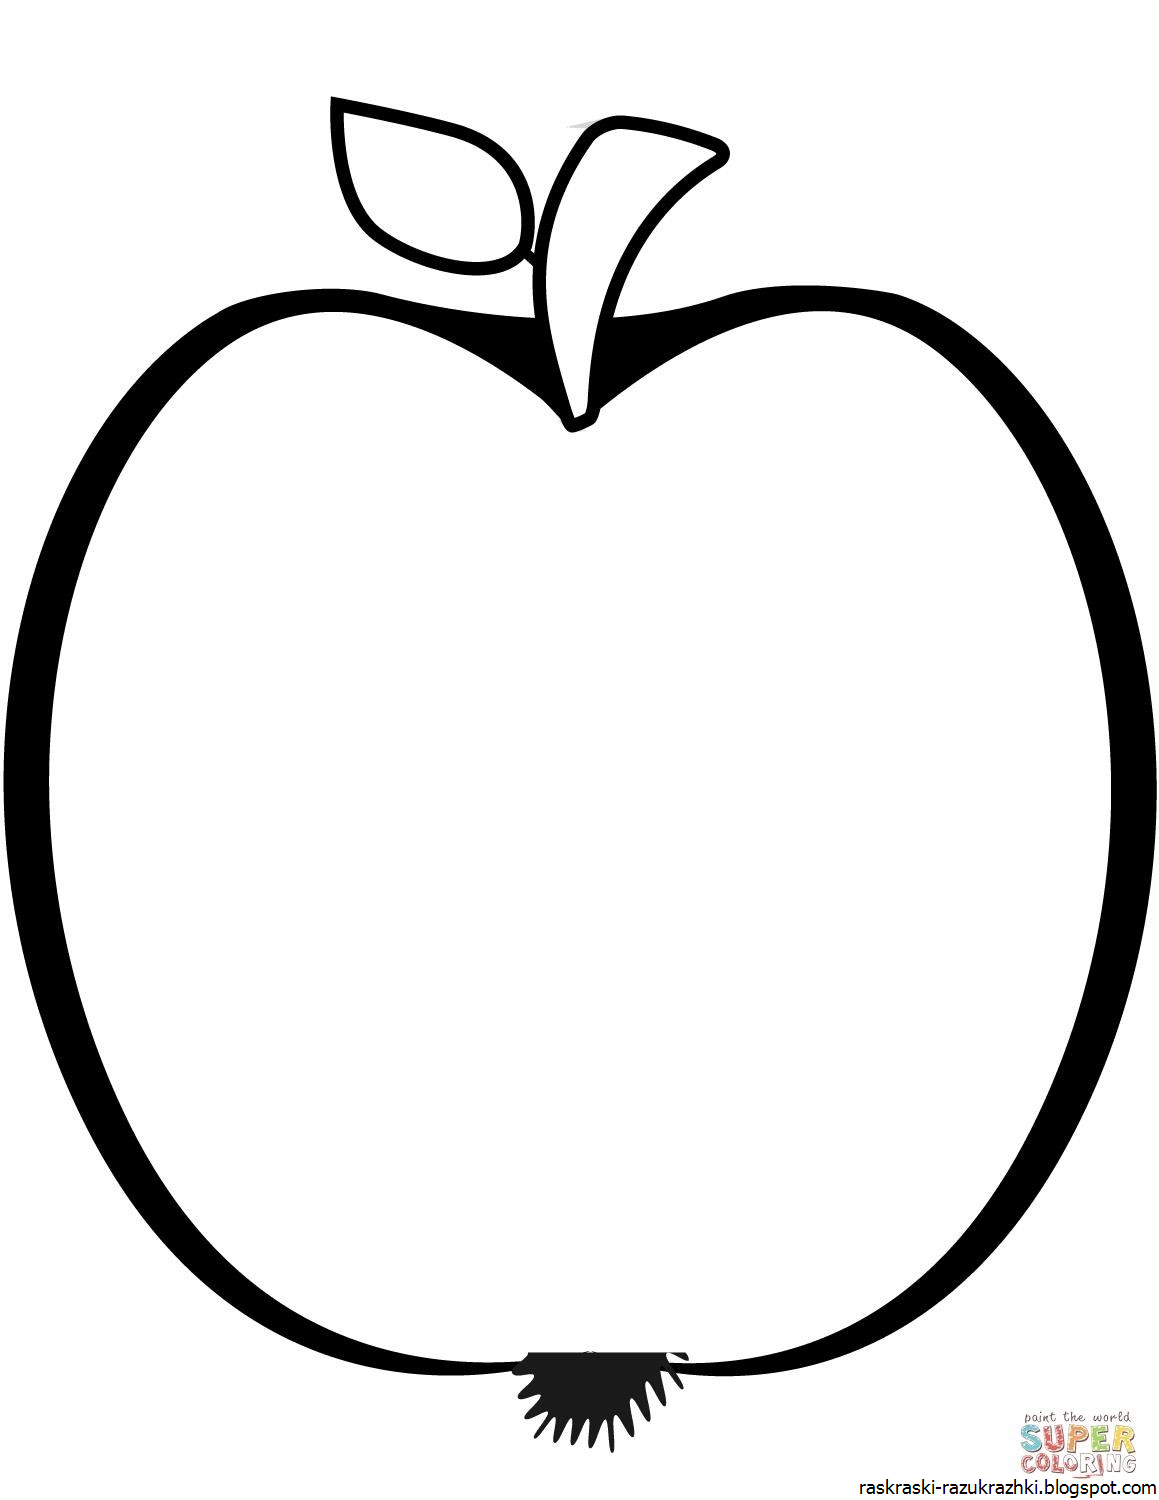 Раскраска 3 яблока. Яблоко раскраска. Яблоко раскраска для детей. Яблоко раскраска для малышей. Яблочко раскраска.